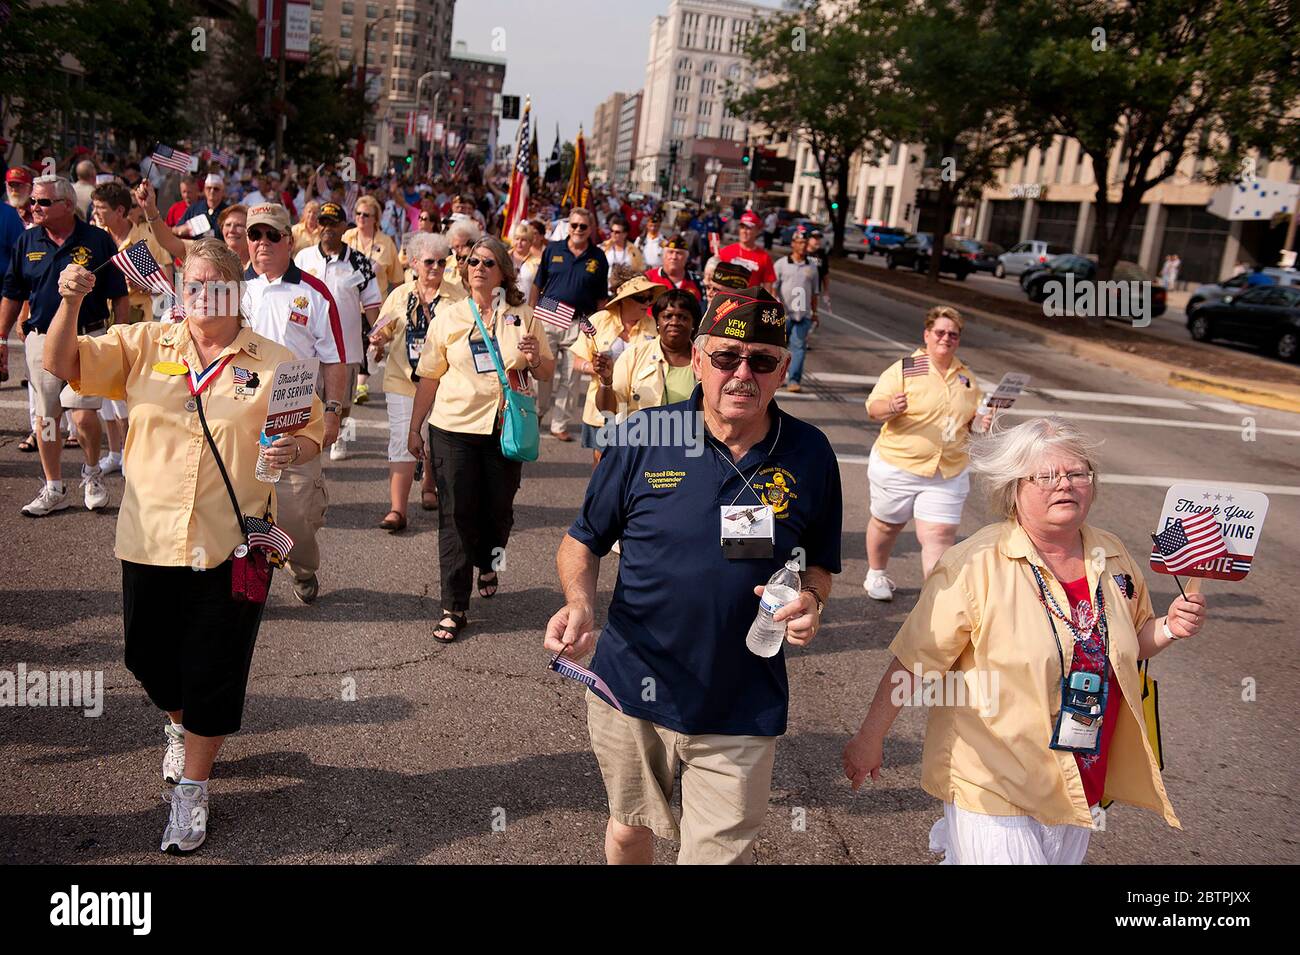 VFW Military Salute Parade et Patriotic Celebration dans le centre-ville de St. Louis, Missouri, États-Unis. Banque D'Images